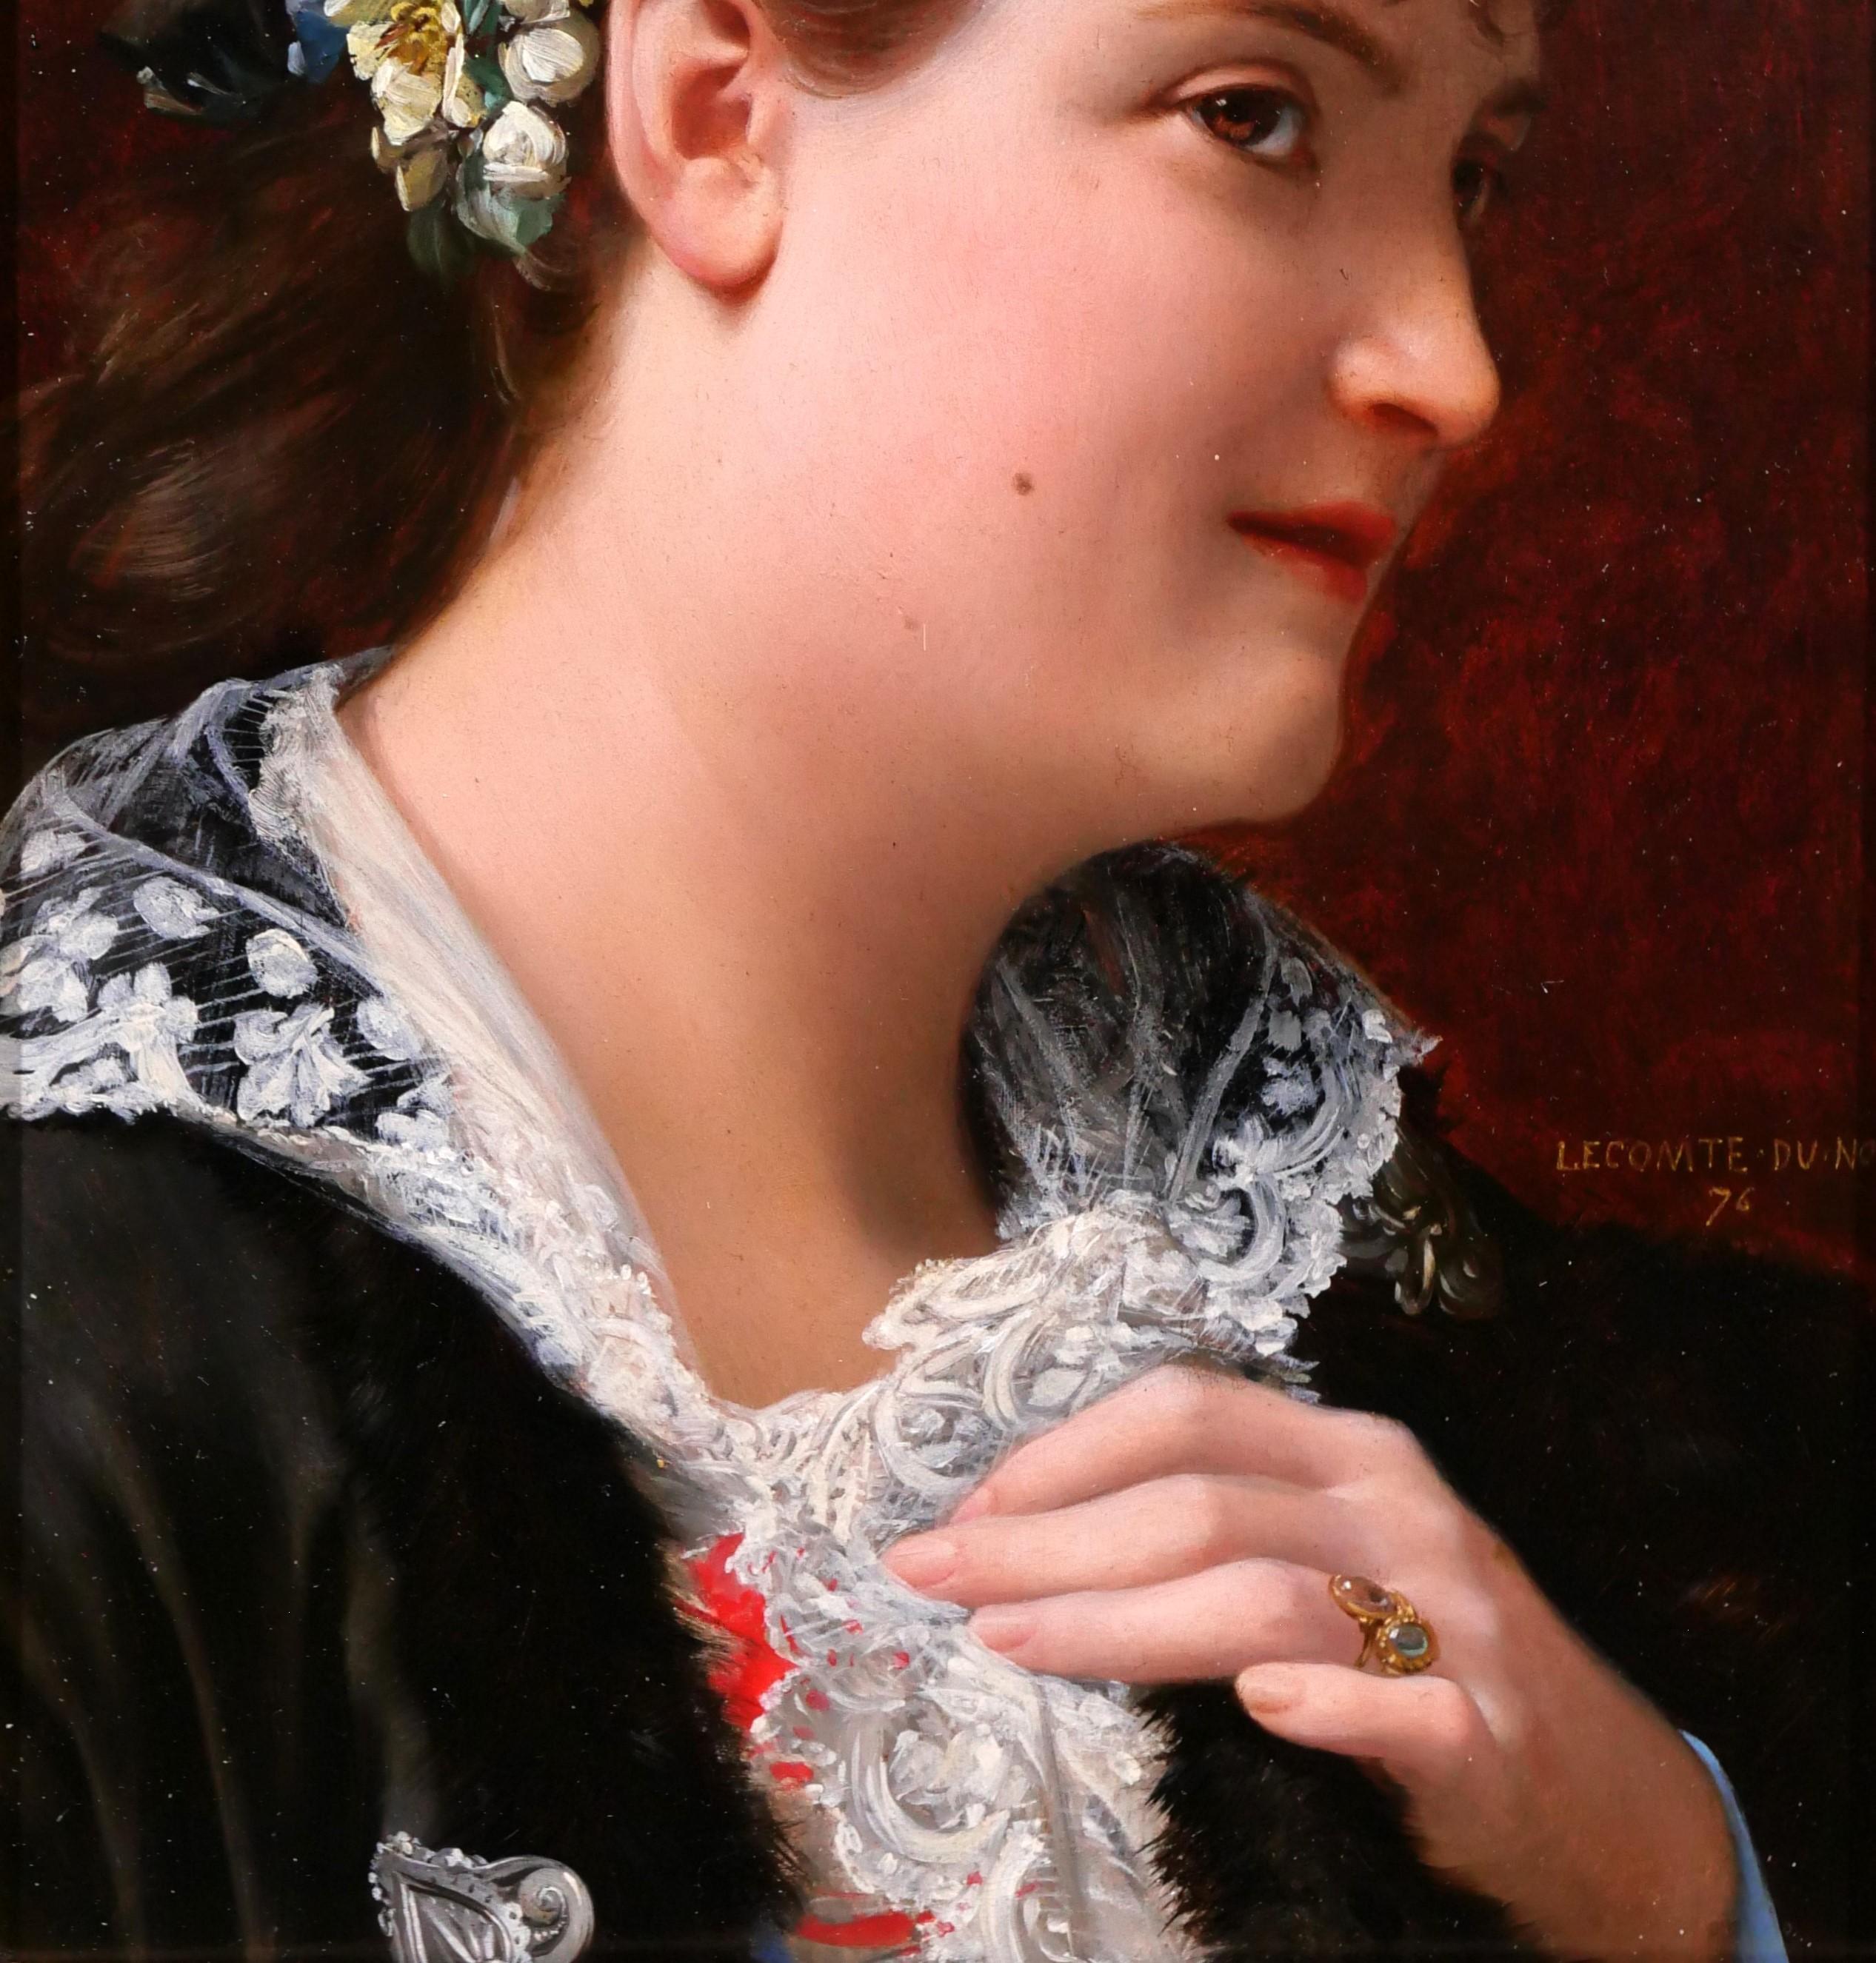 Jean Jules Antoine LECOMTE DU NOÜY
Paris, 1842 - Paris, 1923
Portrait de femme, Tasie
Peinture, huile sur bois
Signé, titré et daté 1876 : 